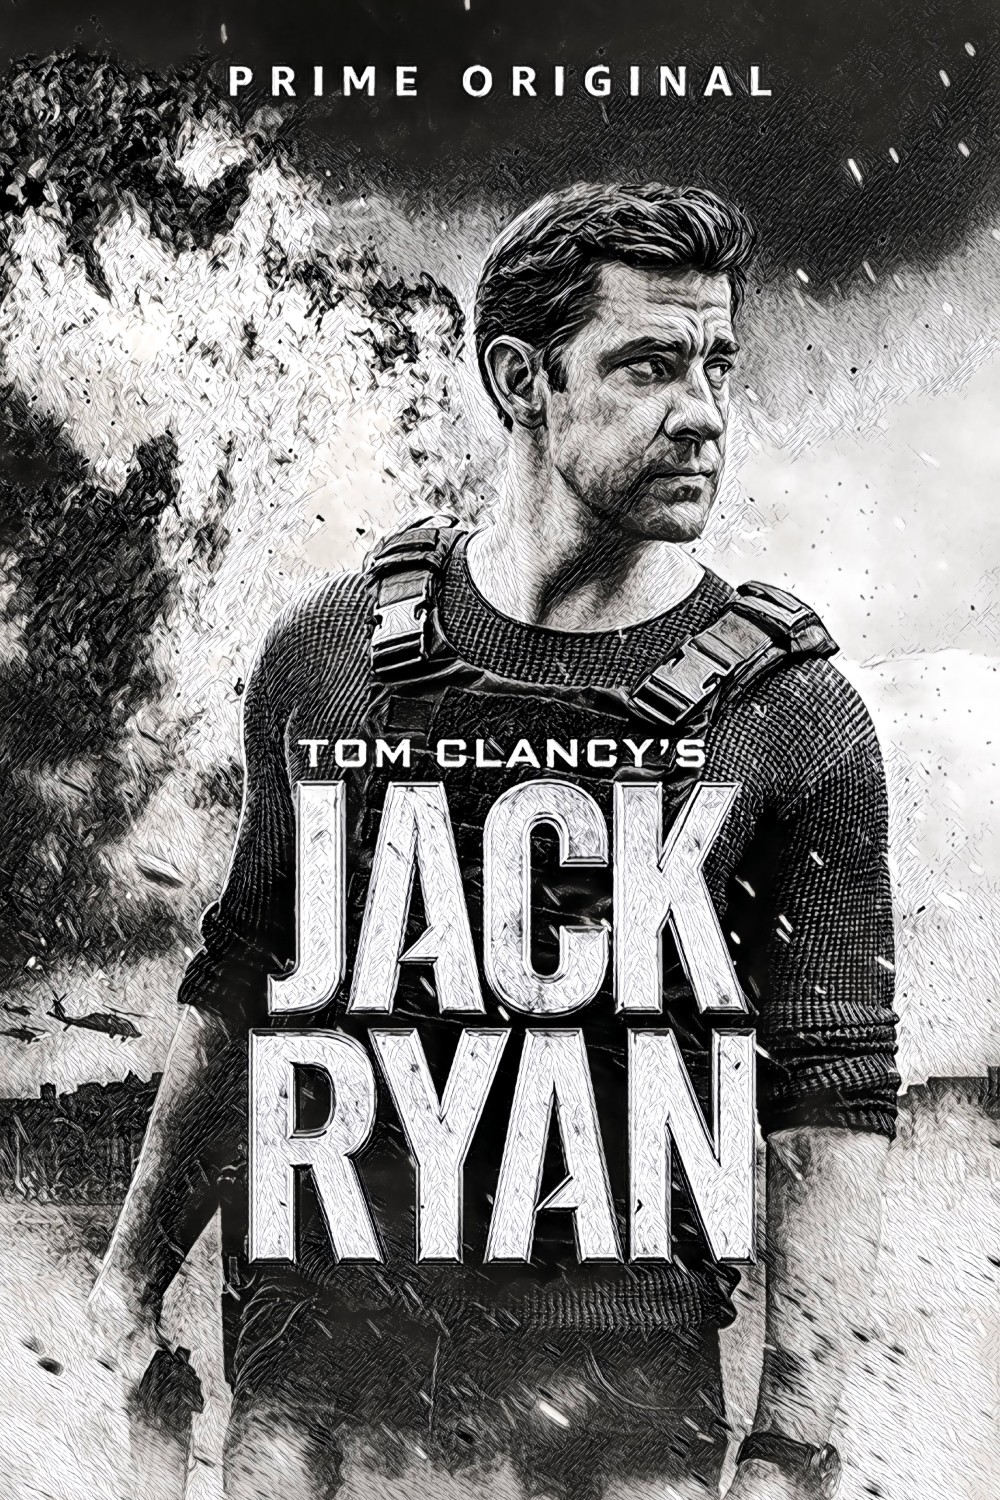 Jack Ryan Poster